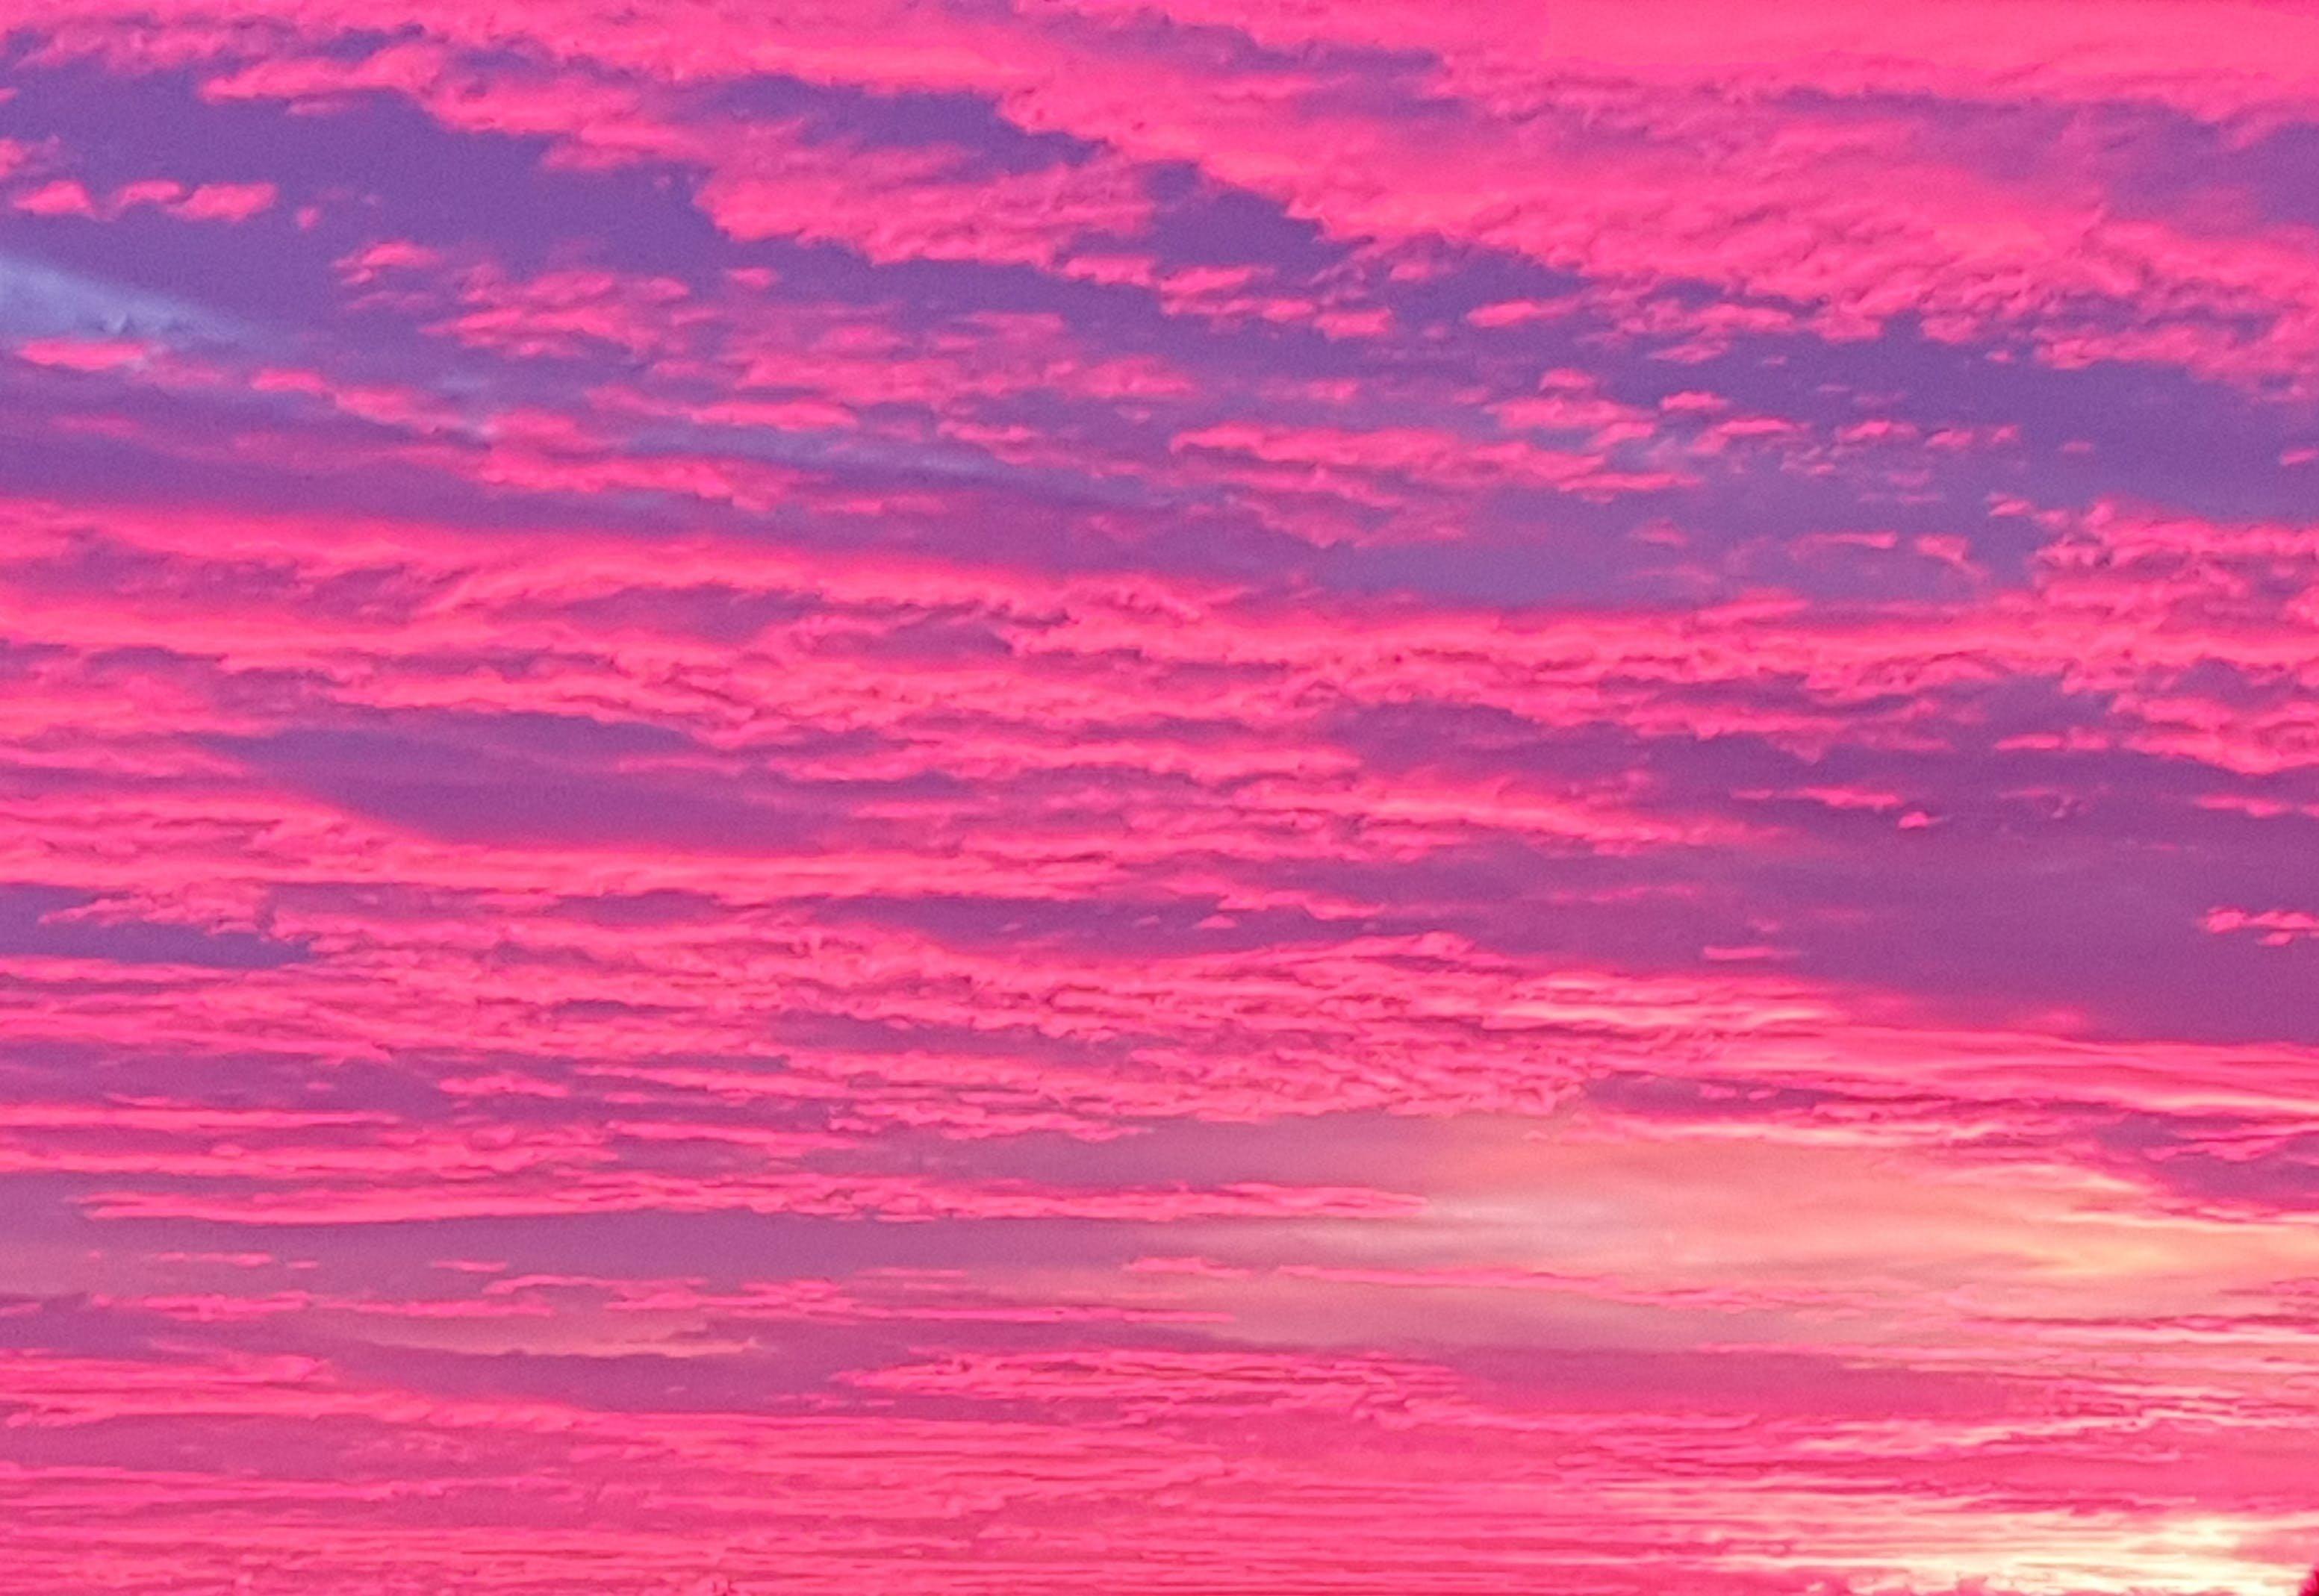 силуэт дерева на фоне розового неба на закате, высокое разрешение, дерево,  море фон картинки и Фото для бесплатной загрузки